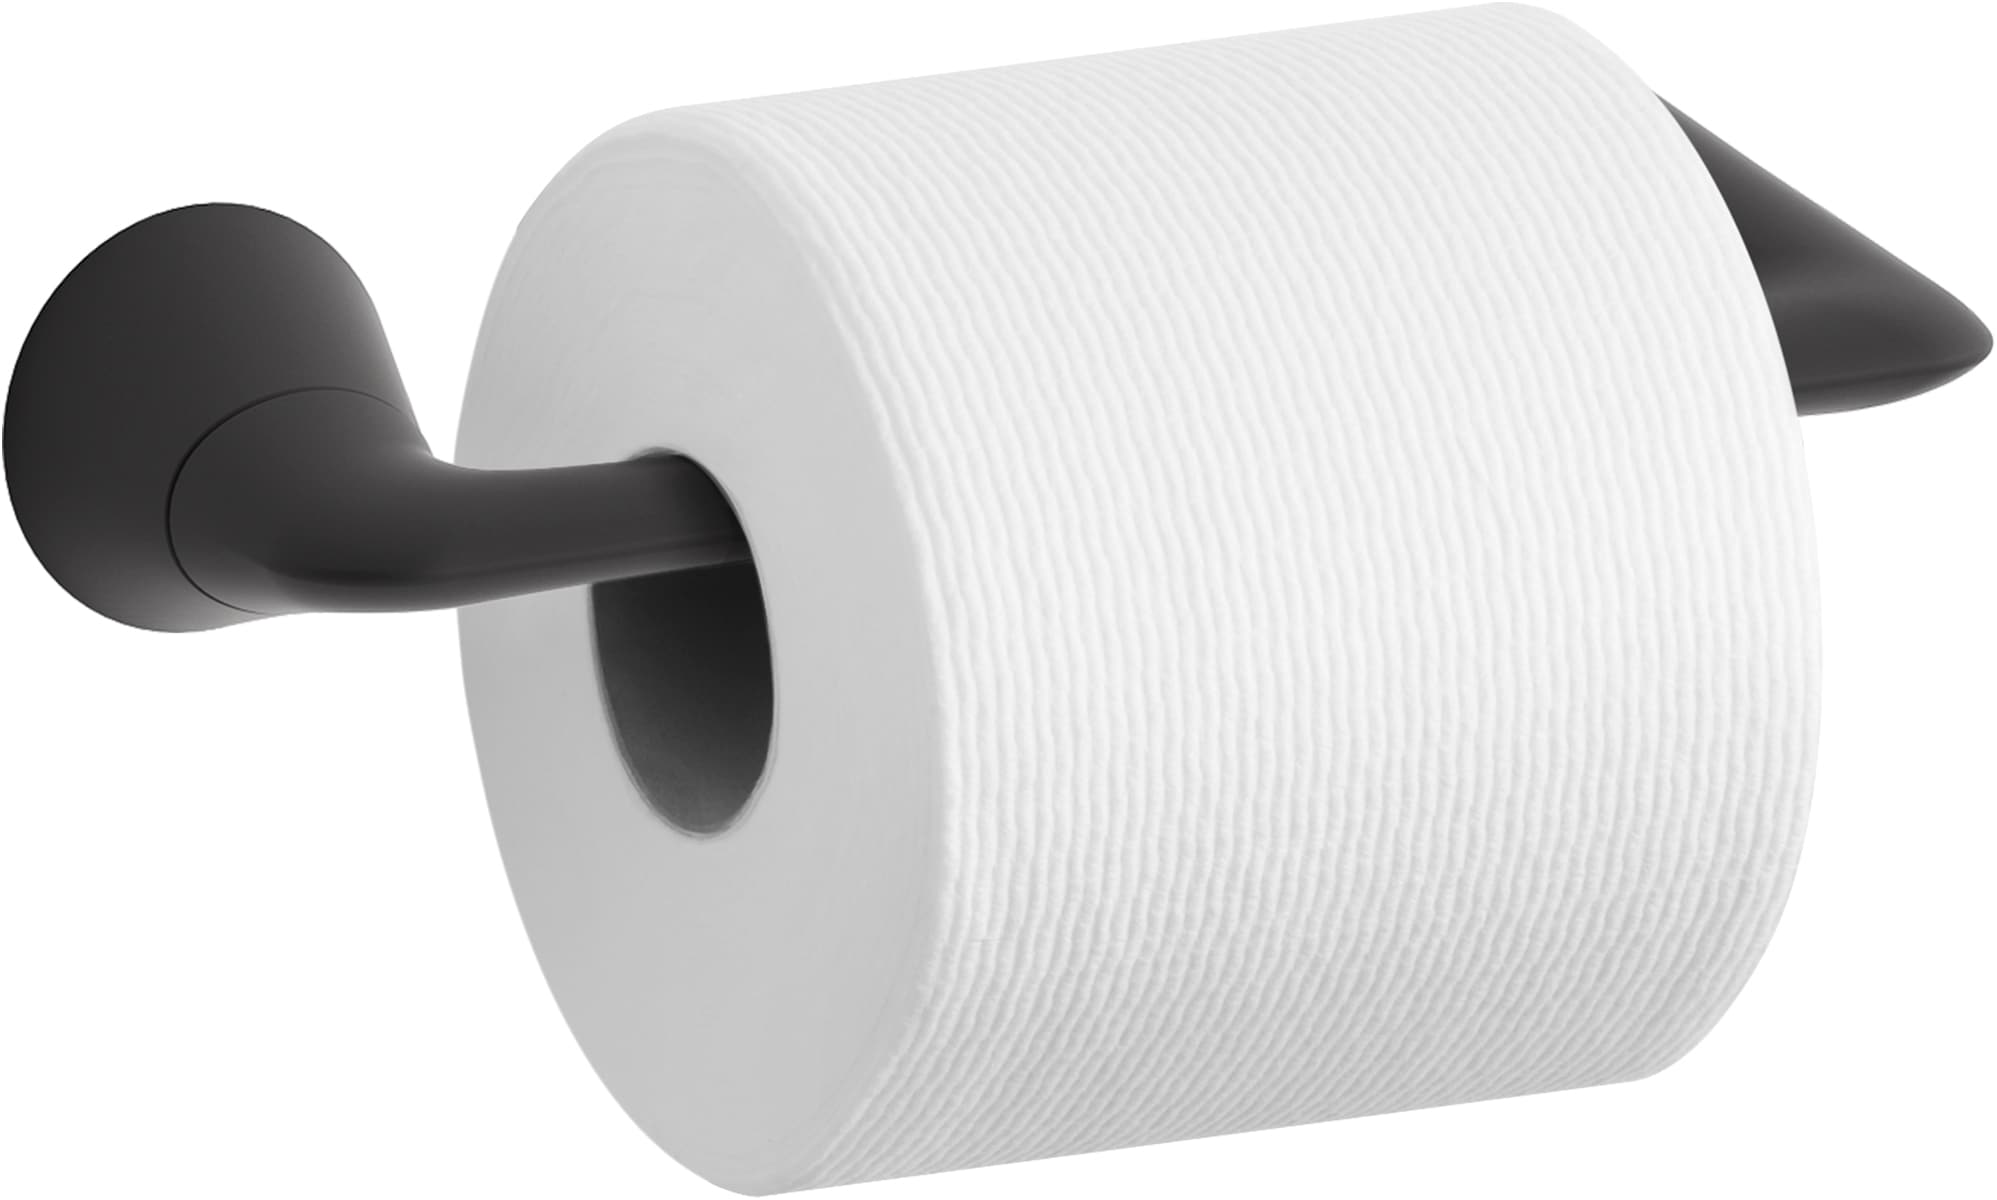 KOHLER Modern Matte Black Wall Mount Pivot Toilet Paper Holder in the ...